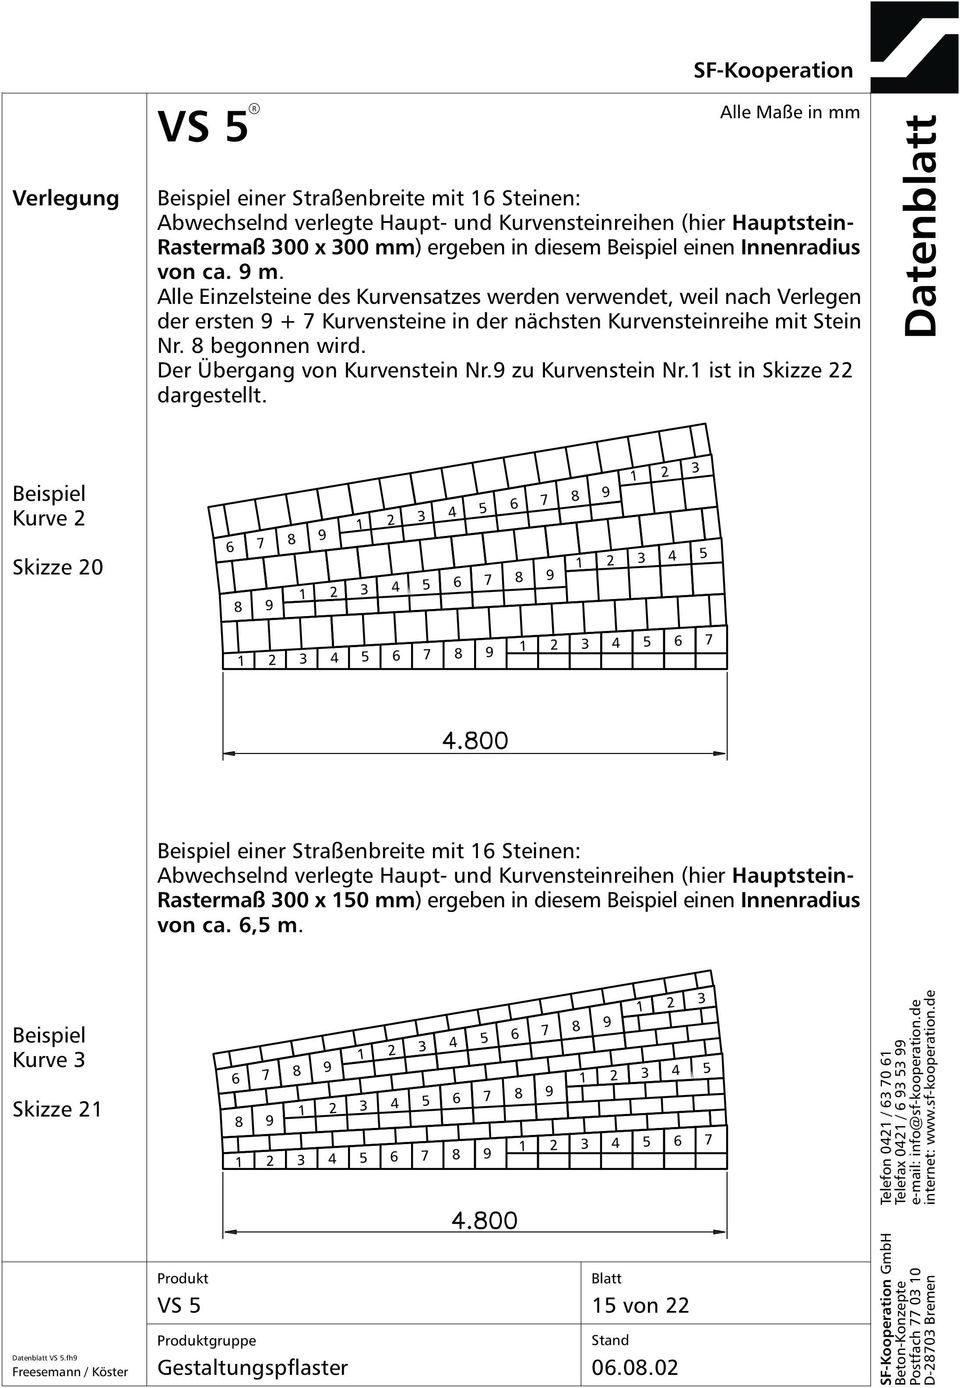 Der Übergang von Kurvenstein Nr.9 zu Kurvenstein Nr. ist in Skizze 22 dargestellt.